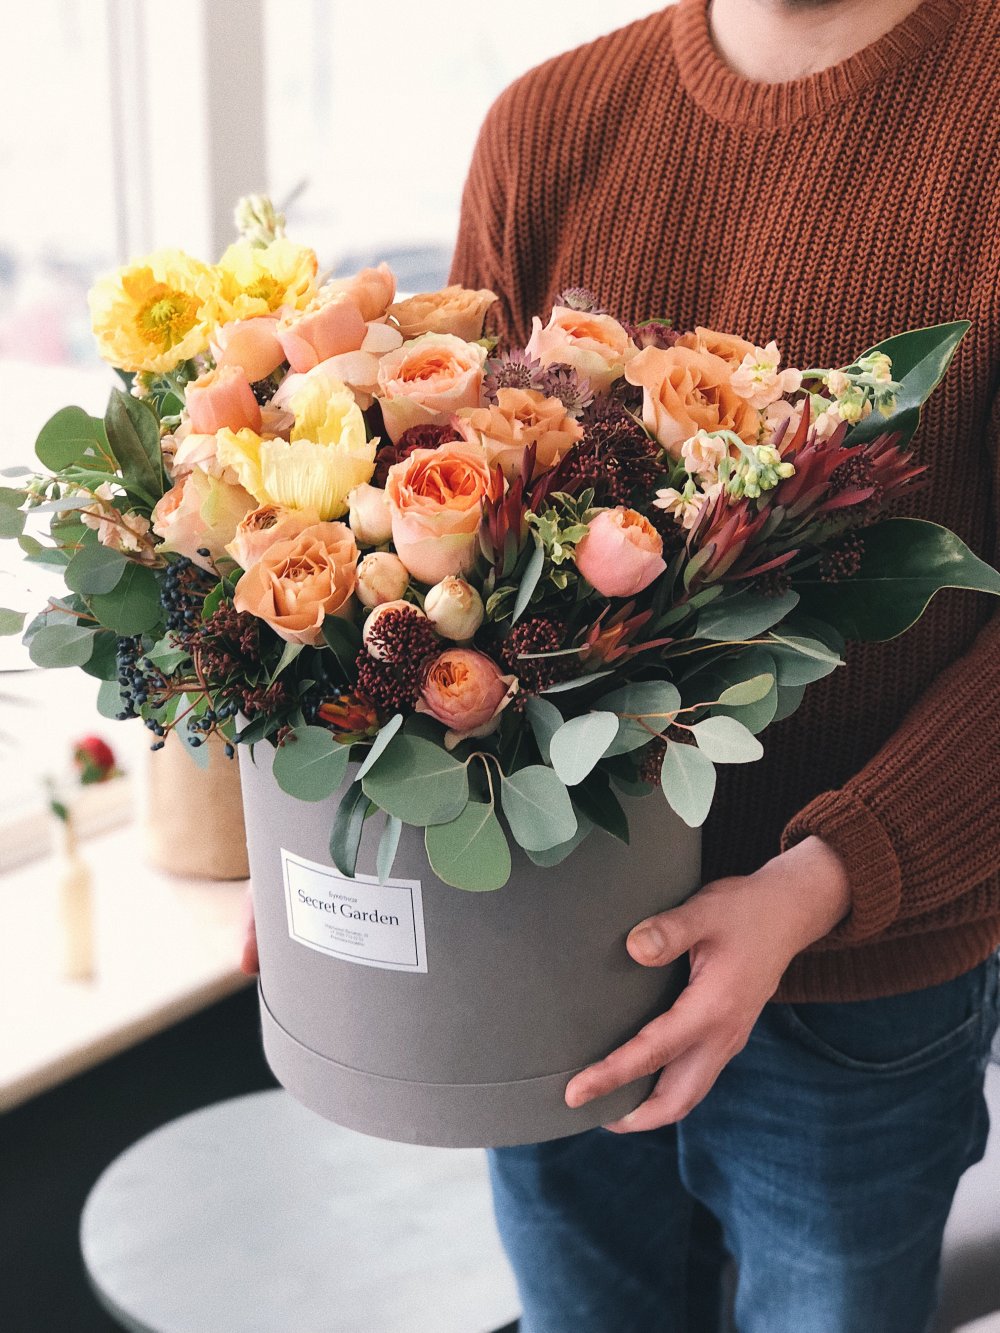 Visa kärlek genom blomleverans i Stockholm